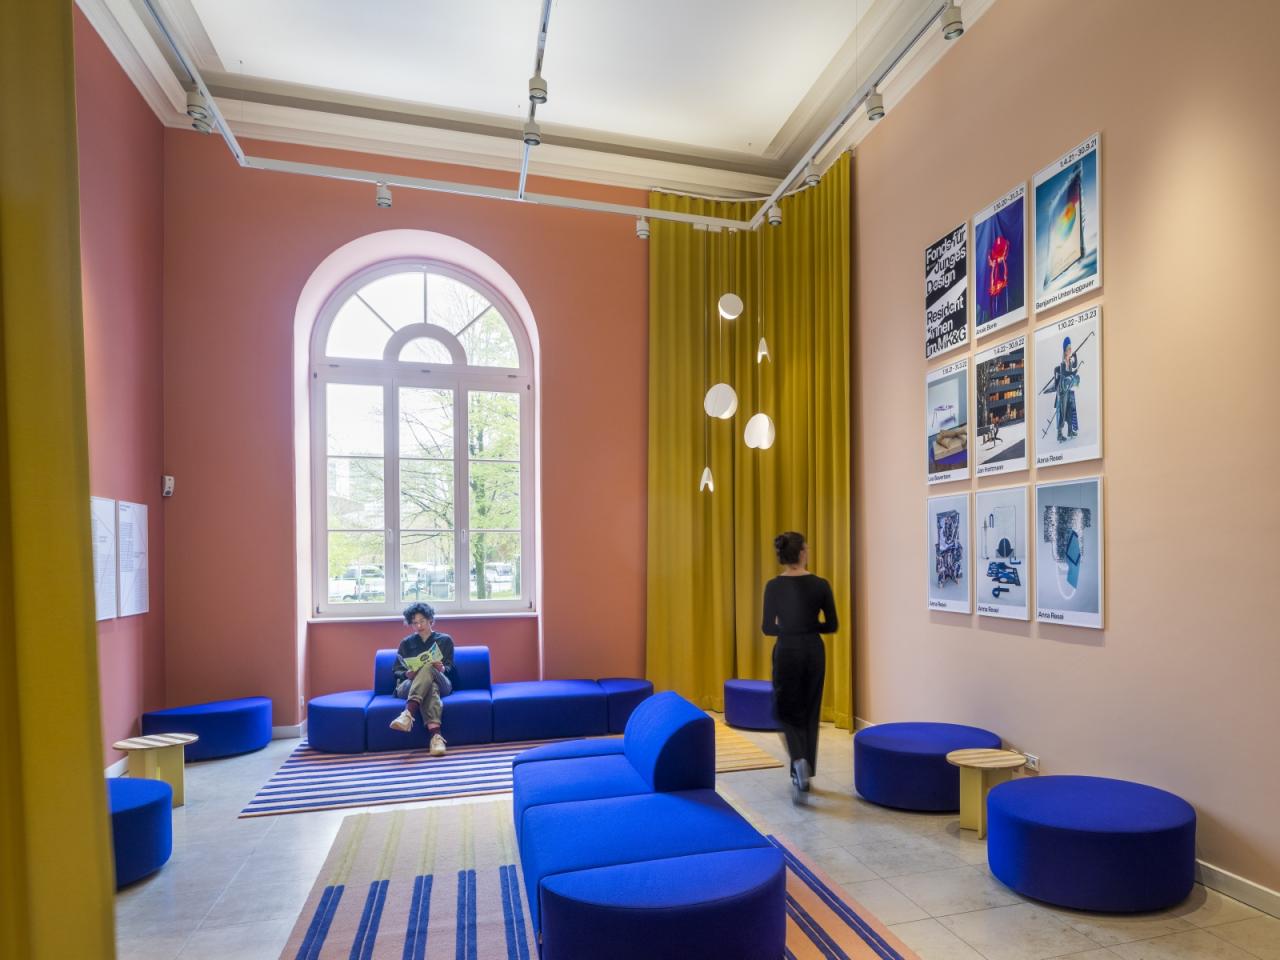 Zwei Besucher*innen in einem hohen, pfirsichfarben gestrichenen Raum mit azurblauen Sofas und großen Fenstern.